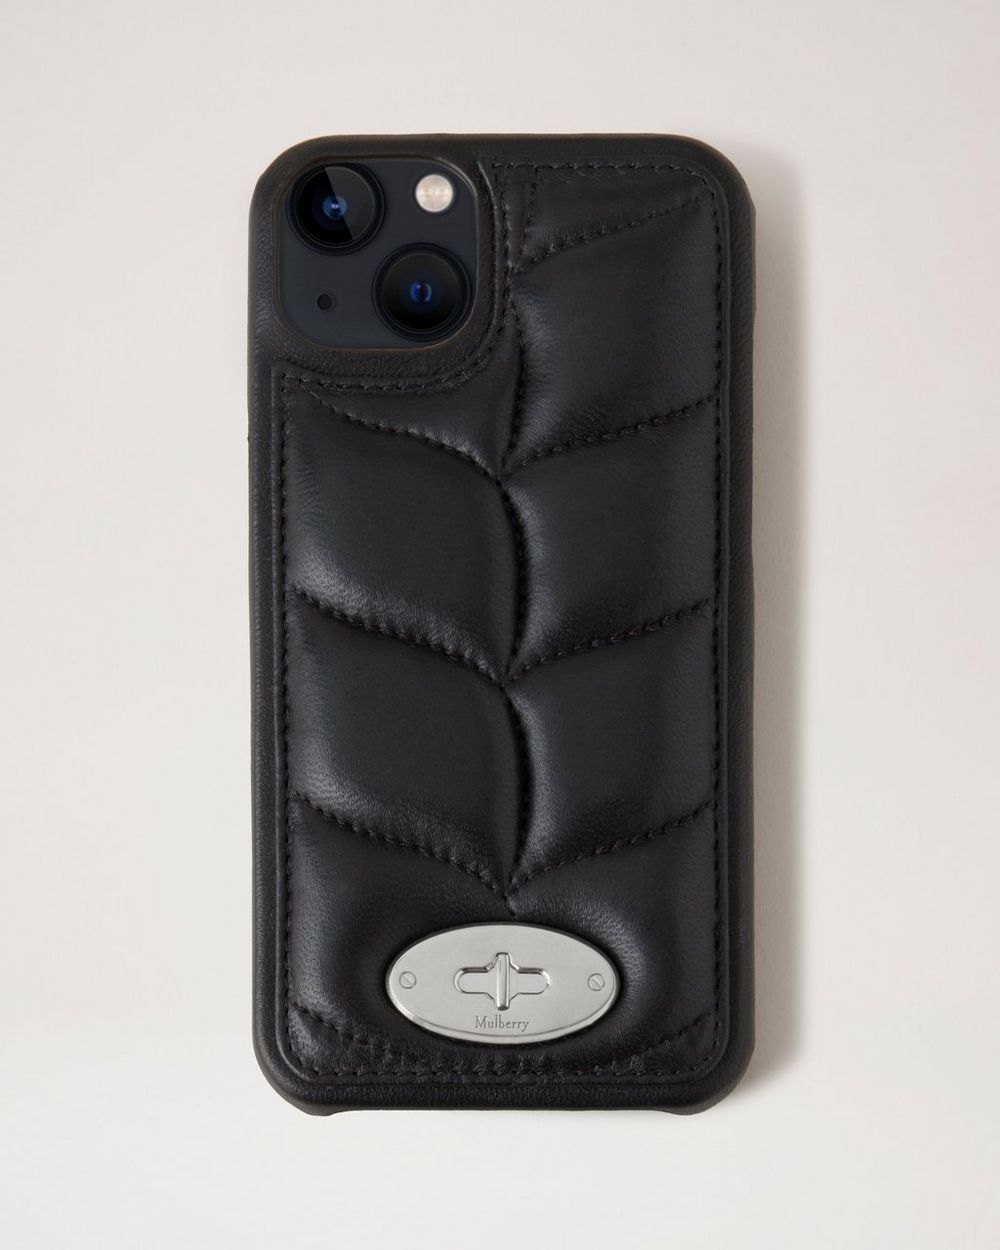 Buy iPhone 7 Plus Case Louis Vuitton Online In India -  India